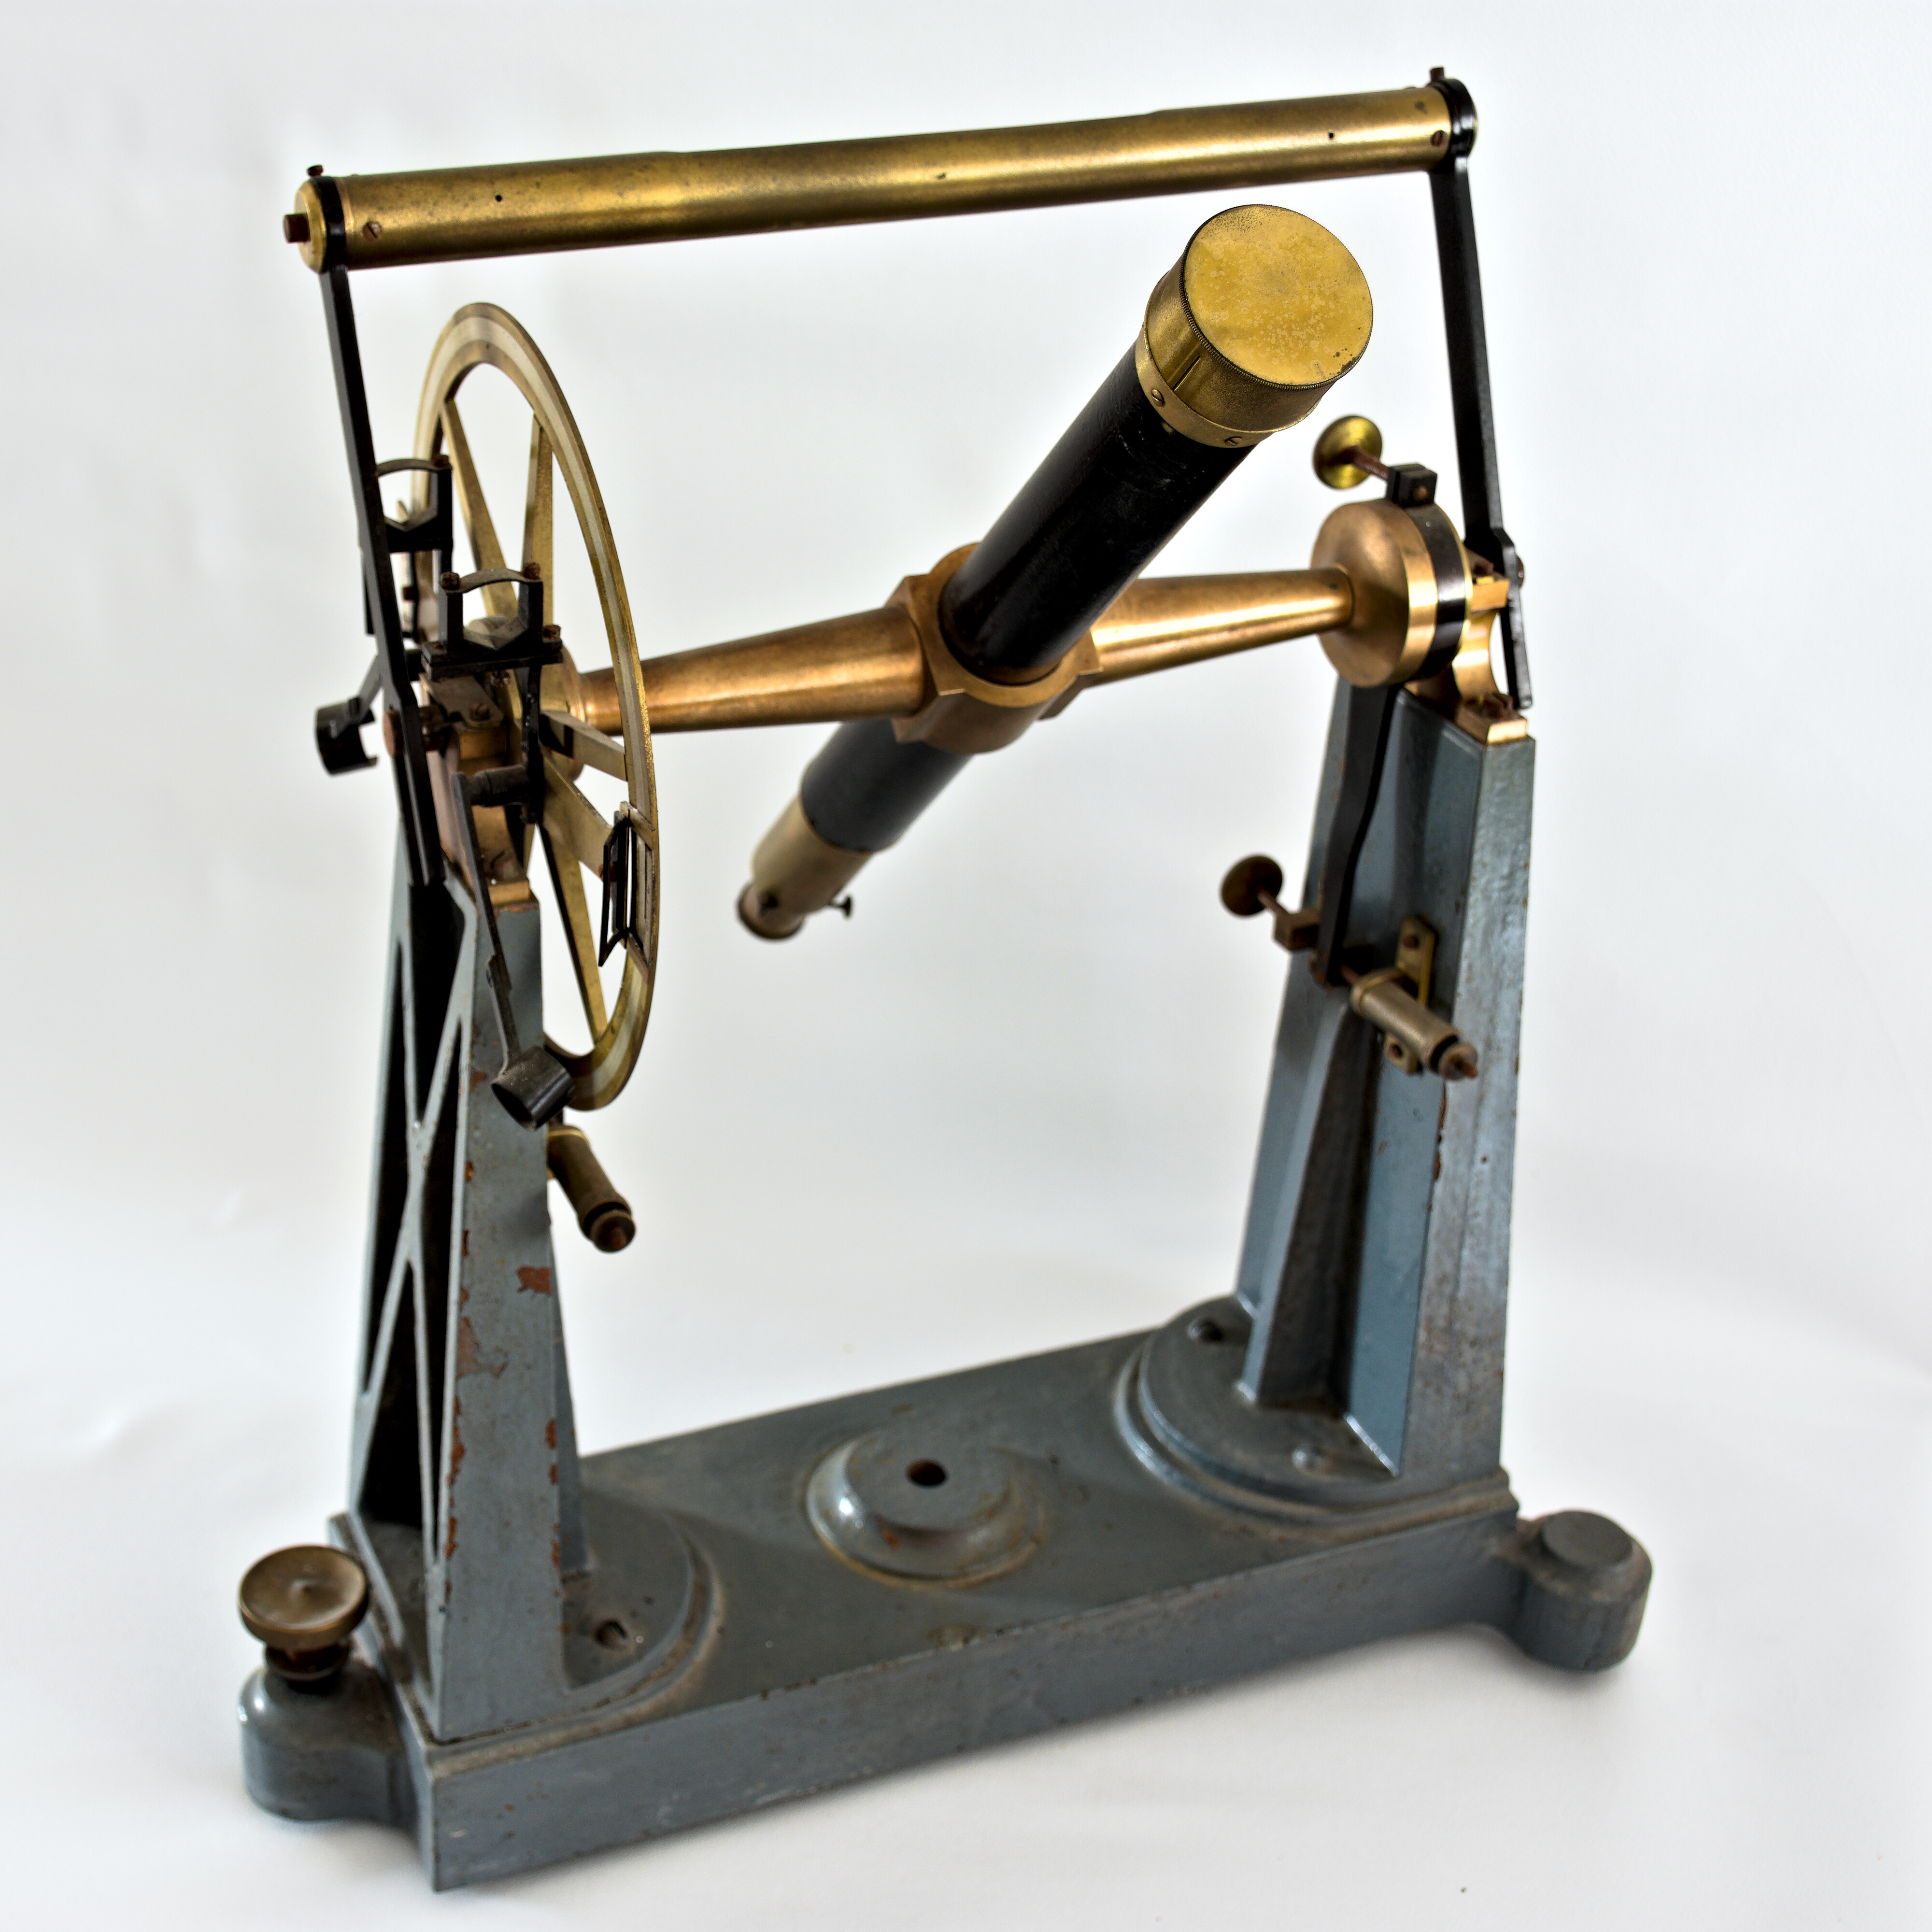 1. kép: A Konkoly Thege Miklóstól vásárolt passzázsműszer (Gothard Tudomány- és Technikatörténeti Állandó Kiállítás)